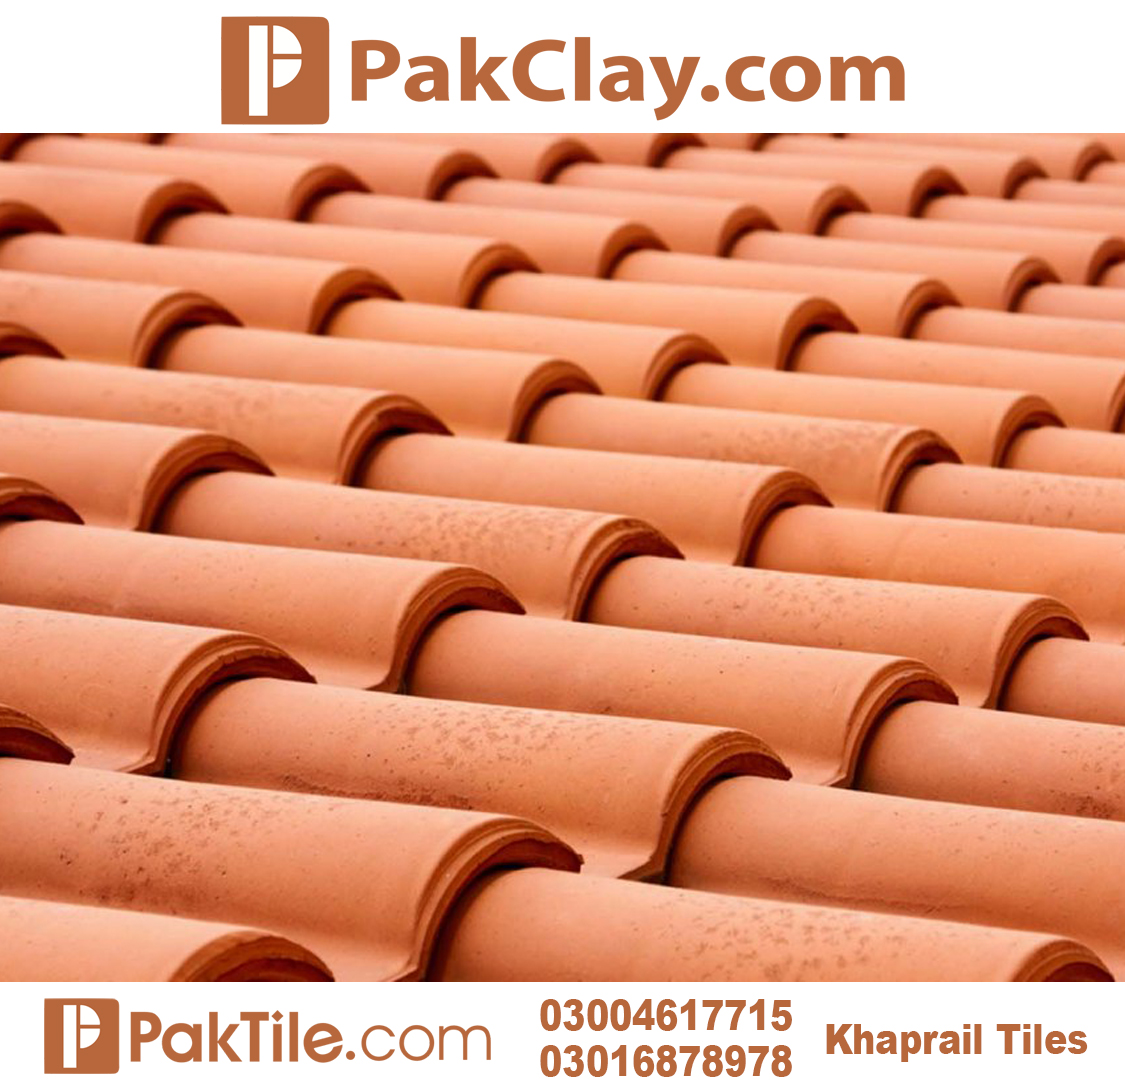 1 Pak Clay Khaprail Tiles in Peshawar